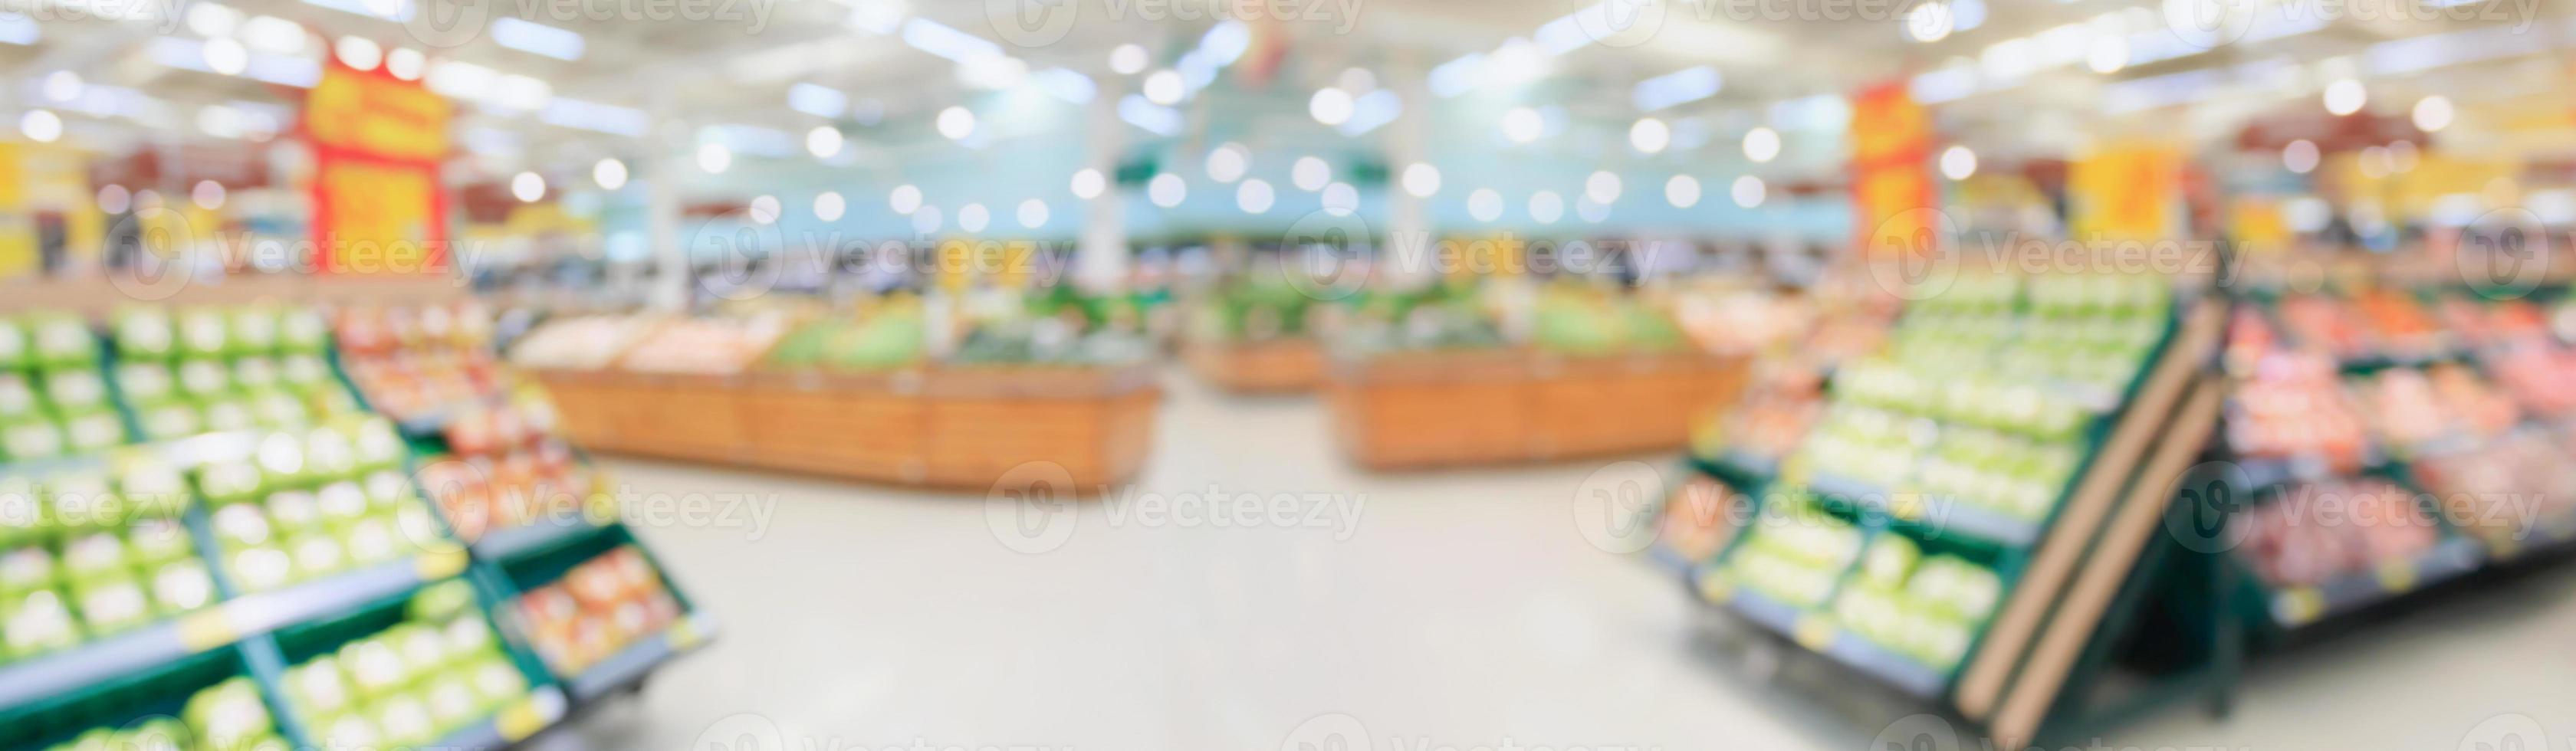 Supermarché épicerie allée intérieure abstrait arrière-plan flou photo